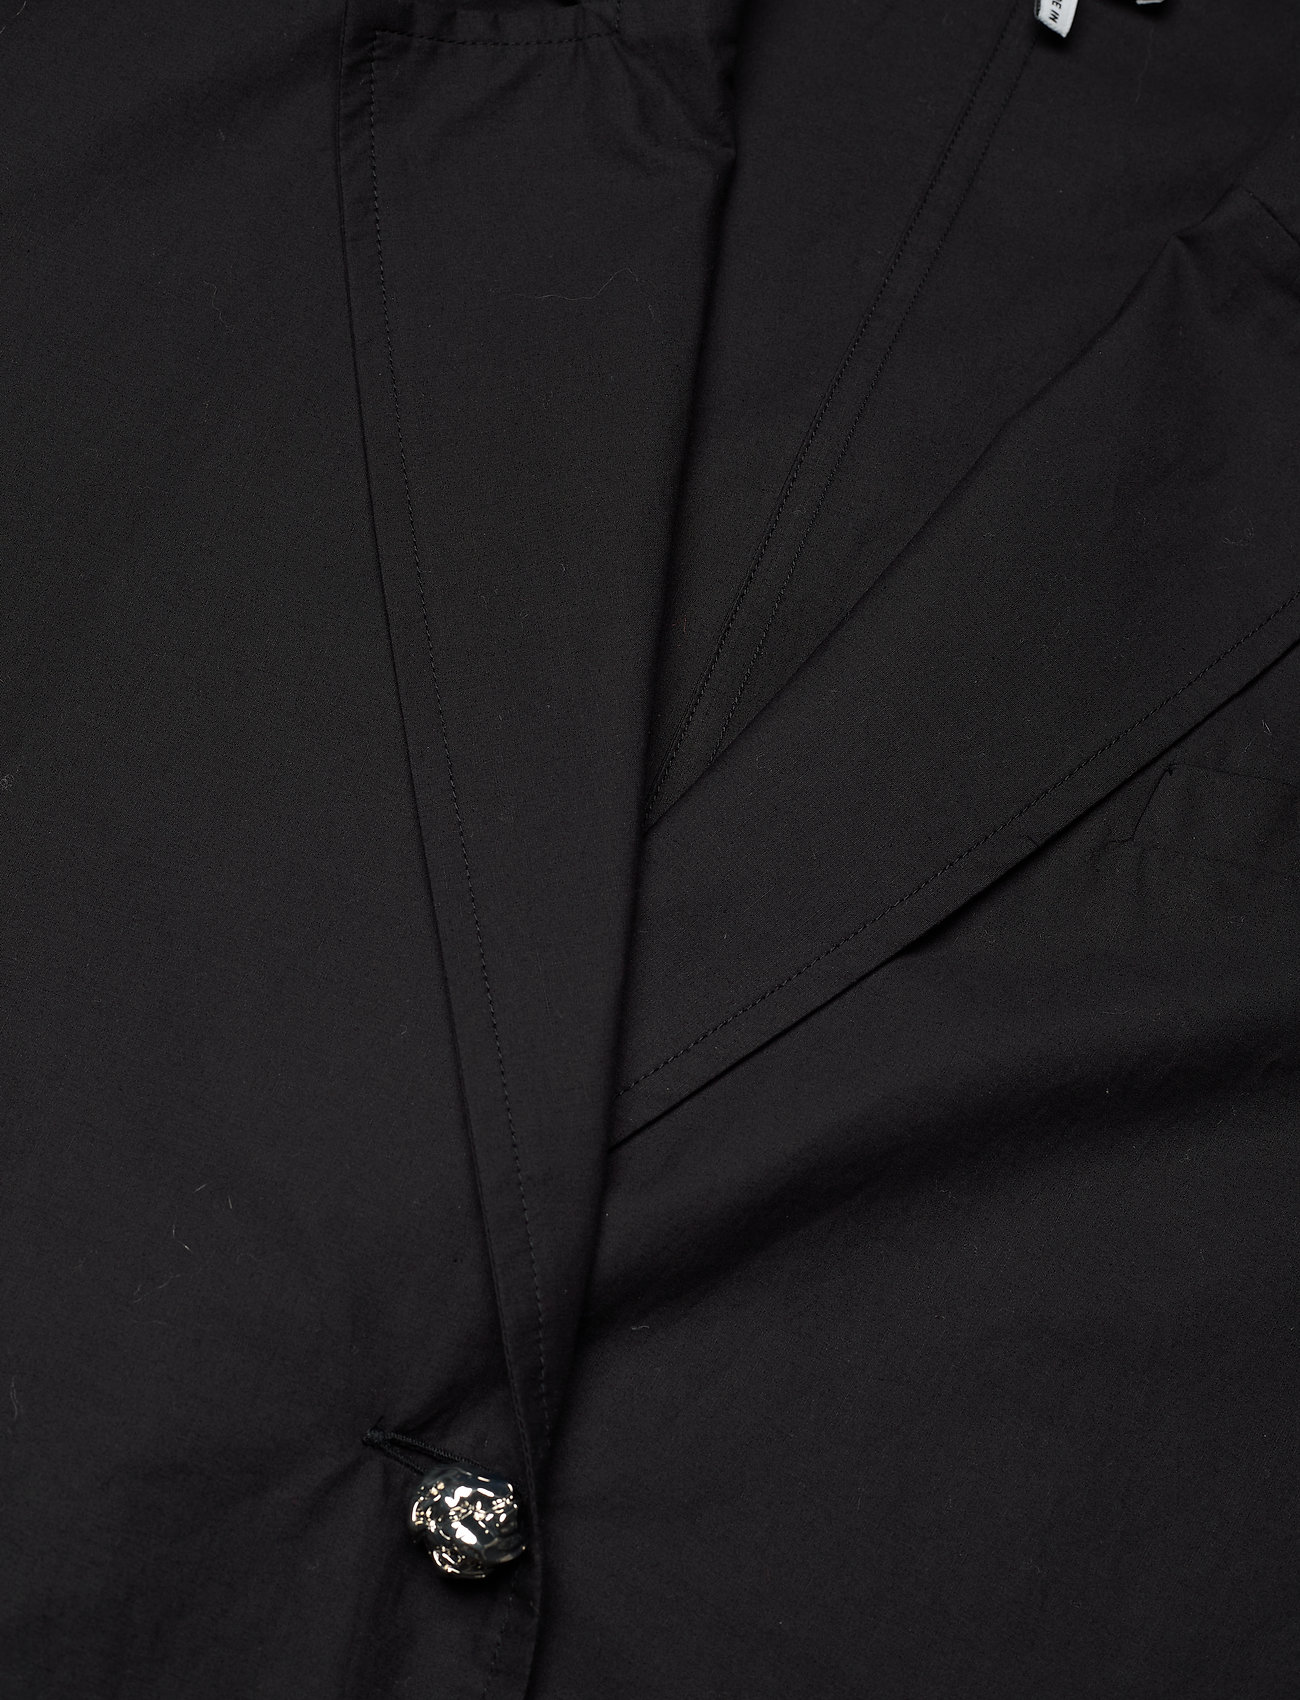 Ganni - Broderie Anglaise Blazer Dress - sommerkjoler - black - 2